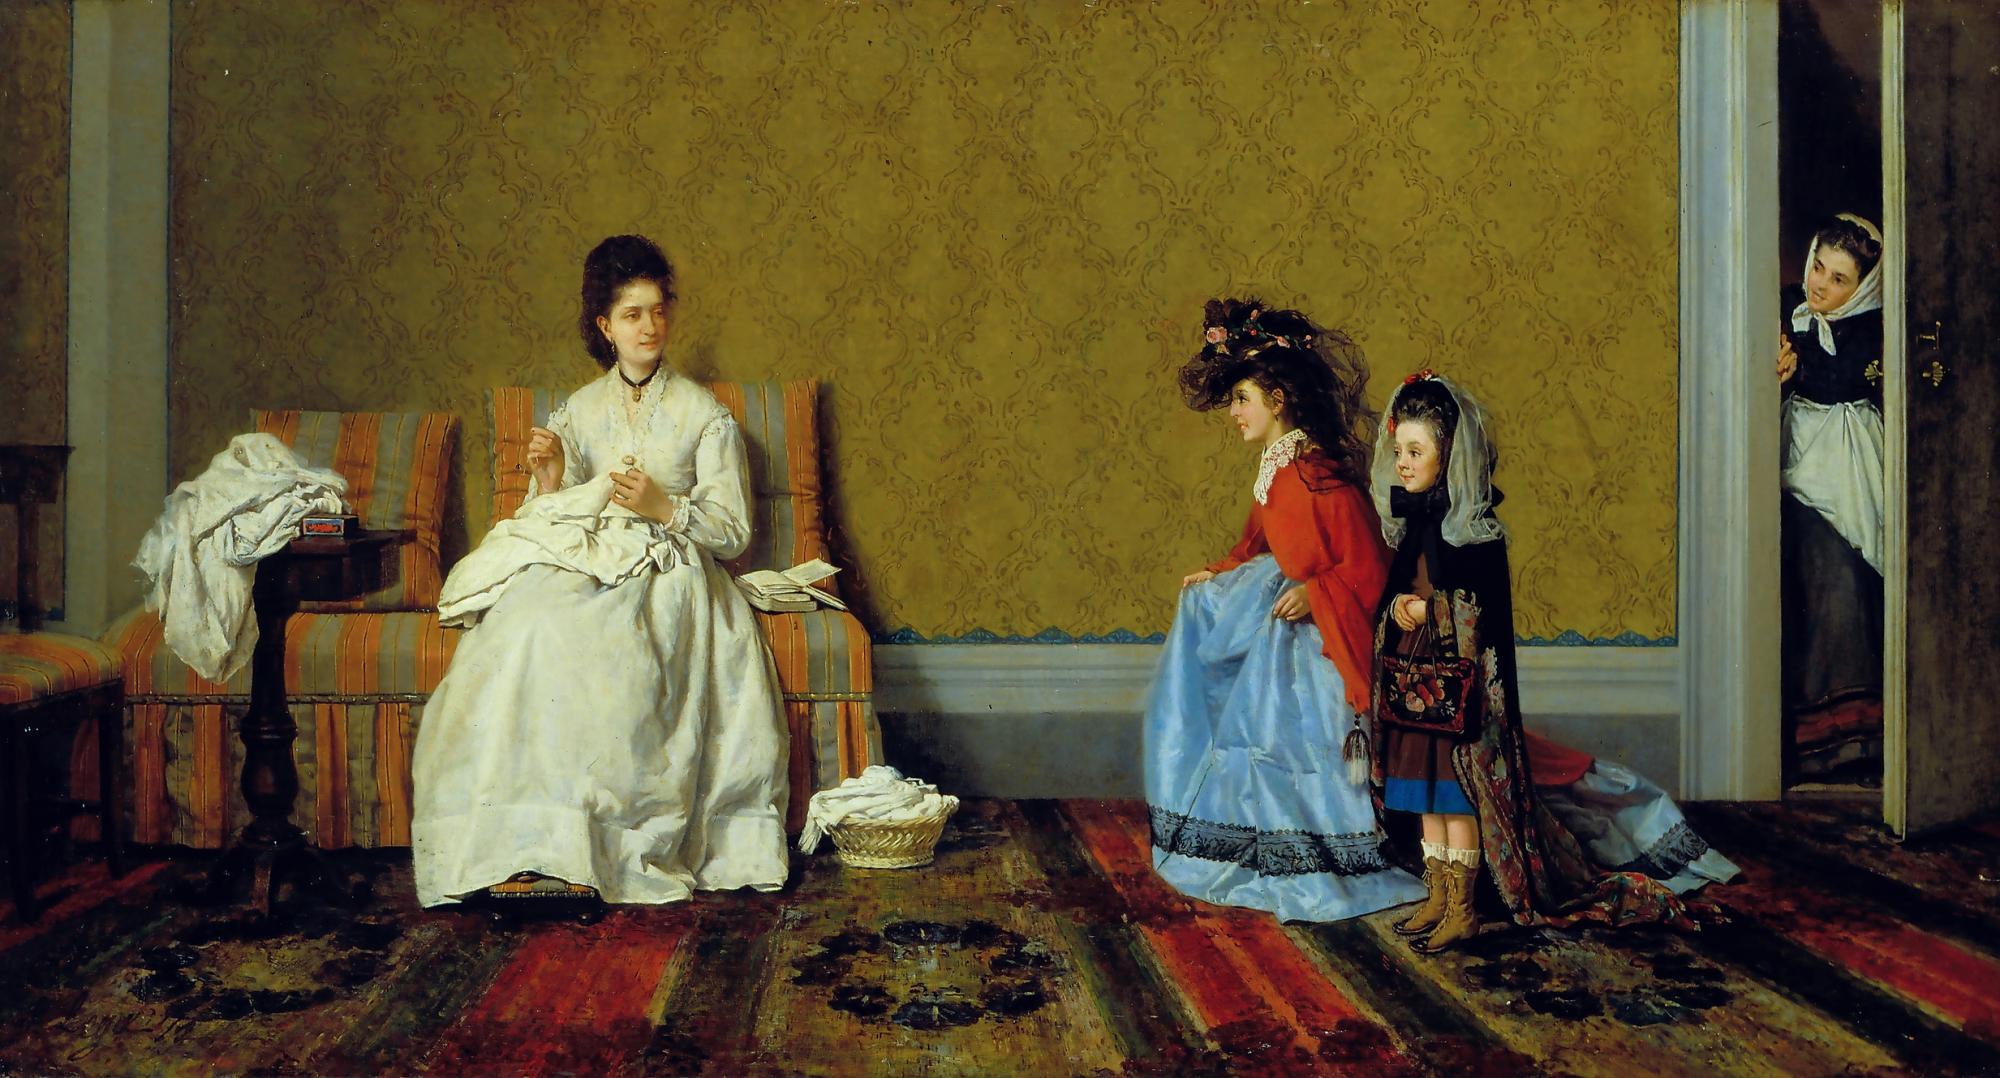 Le bambine che fanno le signore    
1872        
olio su tela     
Viareggio, Istituto Matteucci
Istituto Matteucci, Viareggio
